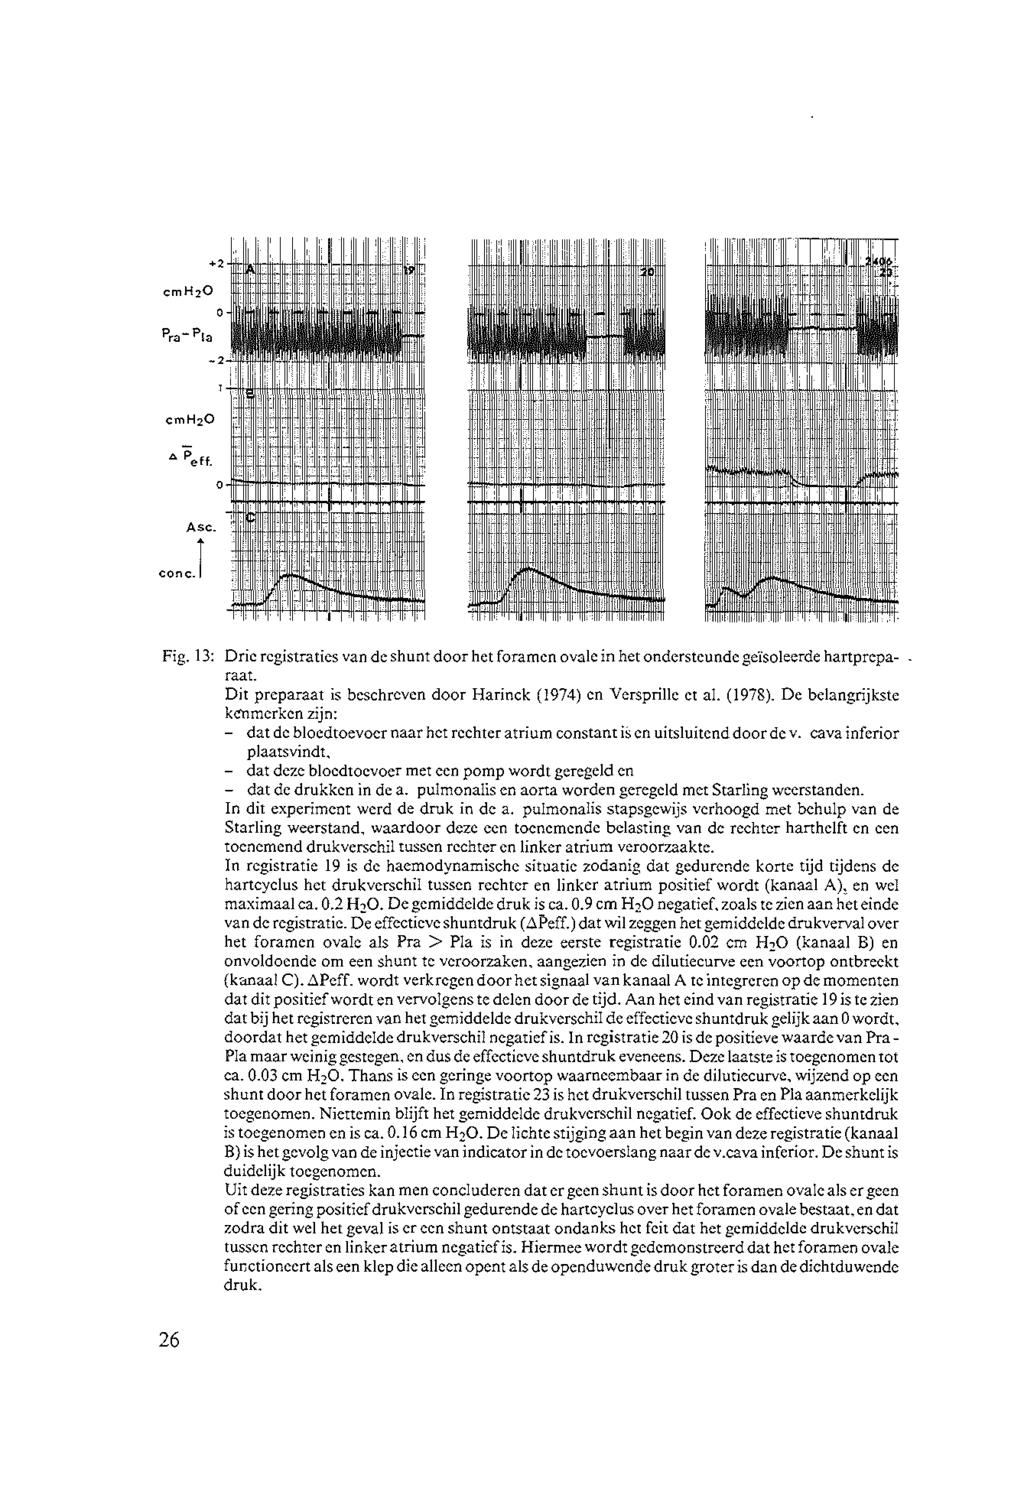 Fig. 13: Drie registraties van de shunt door het foramen ovale in het ondersteunde geïsoleerde hartprcparaat. Dit preparaat is beschreven door Harinck (1974) en Versprille et al. (1978).